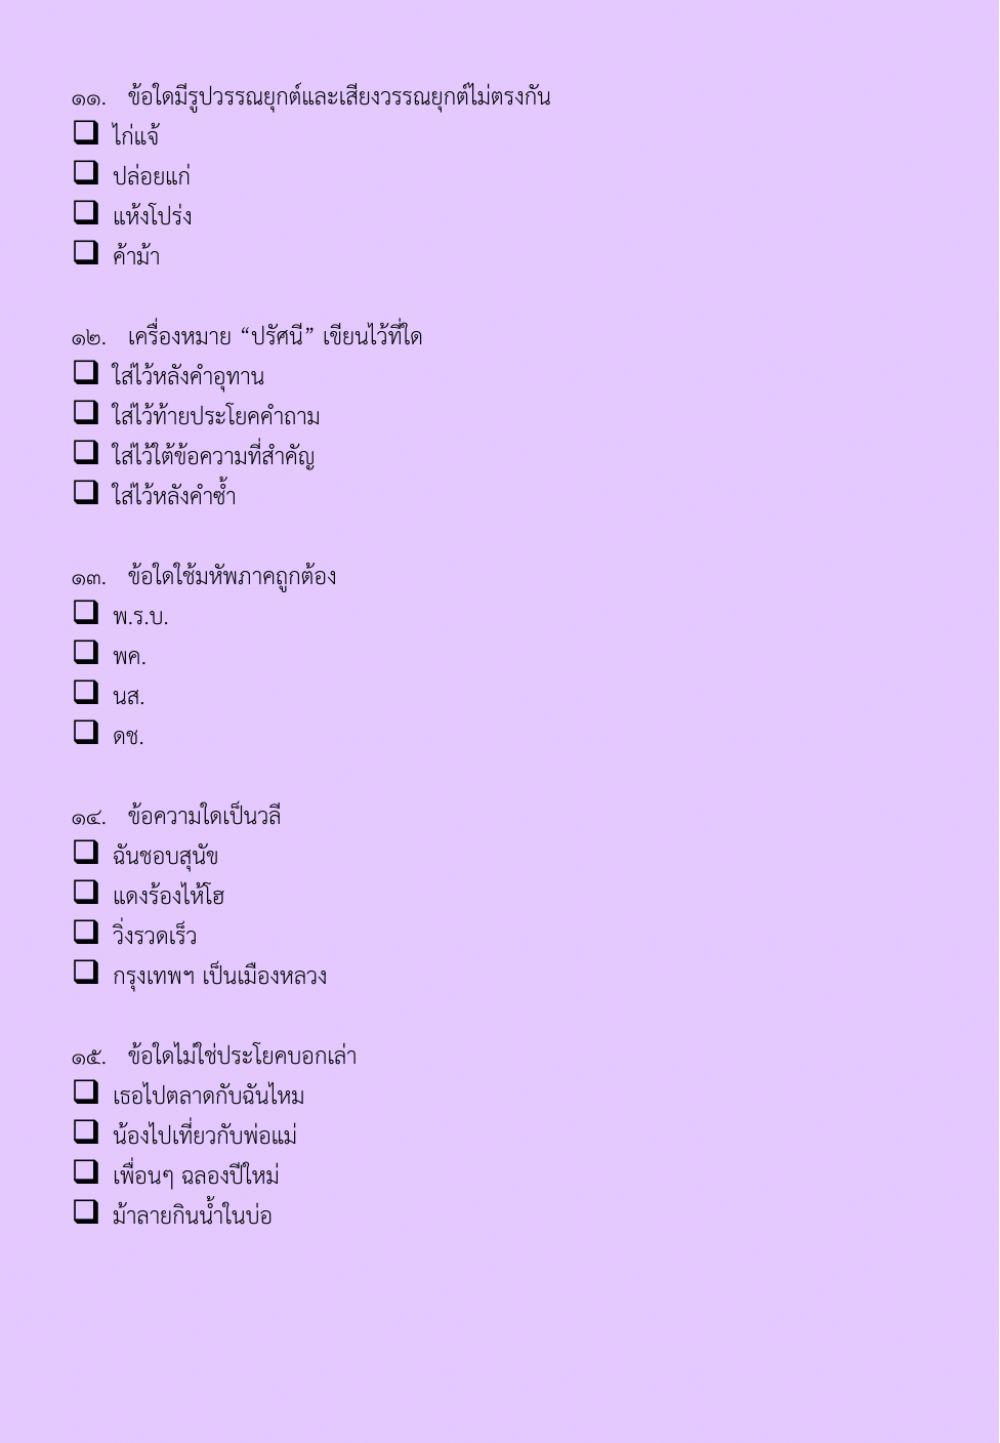 แบบทดสอบวิชาภาษาไทย ชุดที่ 4